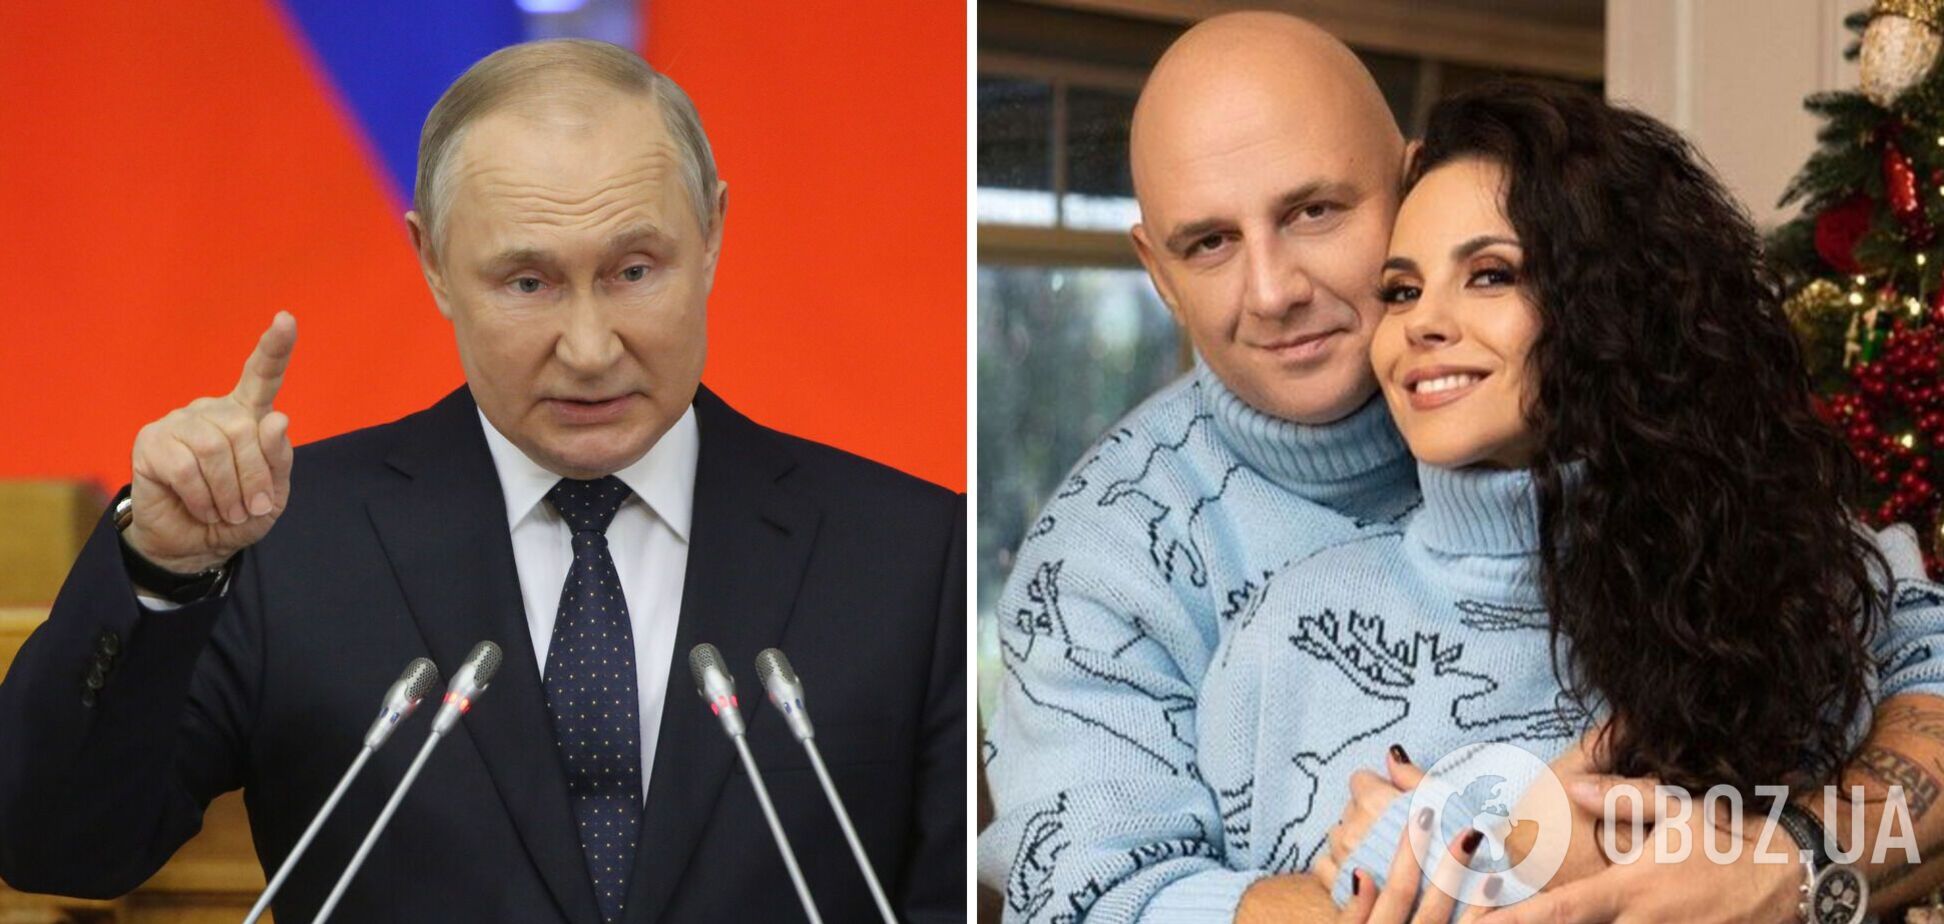 В РФ возбудили дело против 19-летнего диджея, который на Новый год вместо поздравления Путина включил песню Потапа и Насти